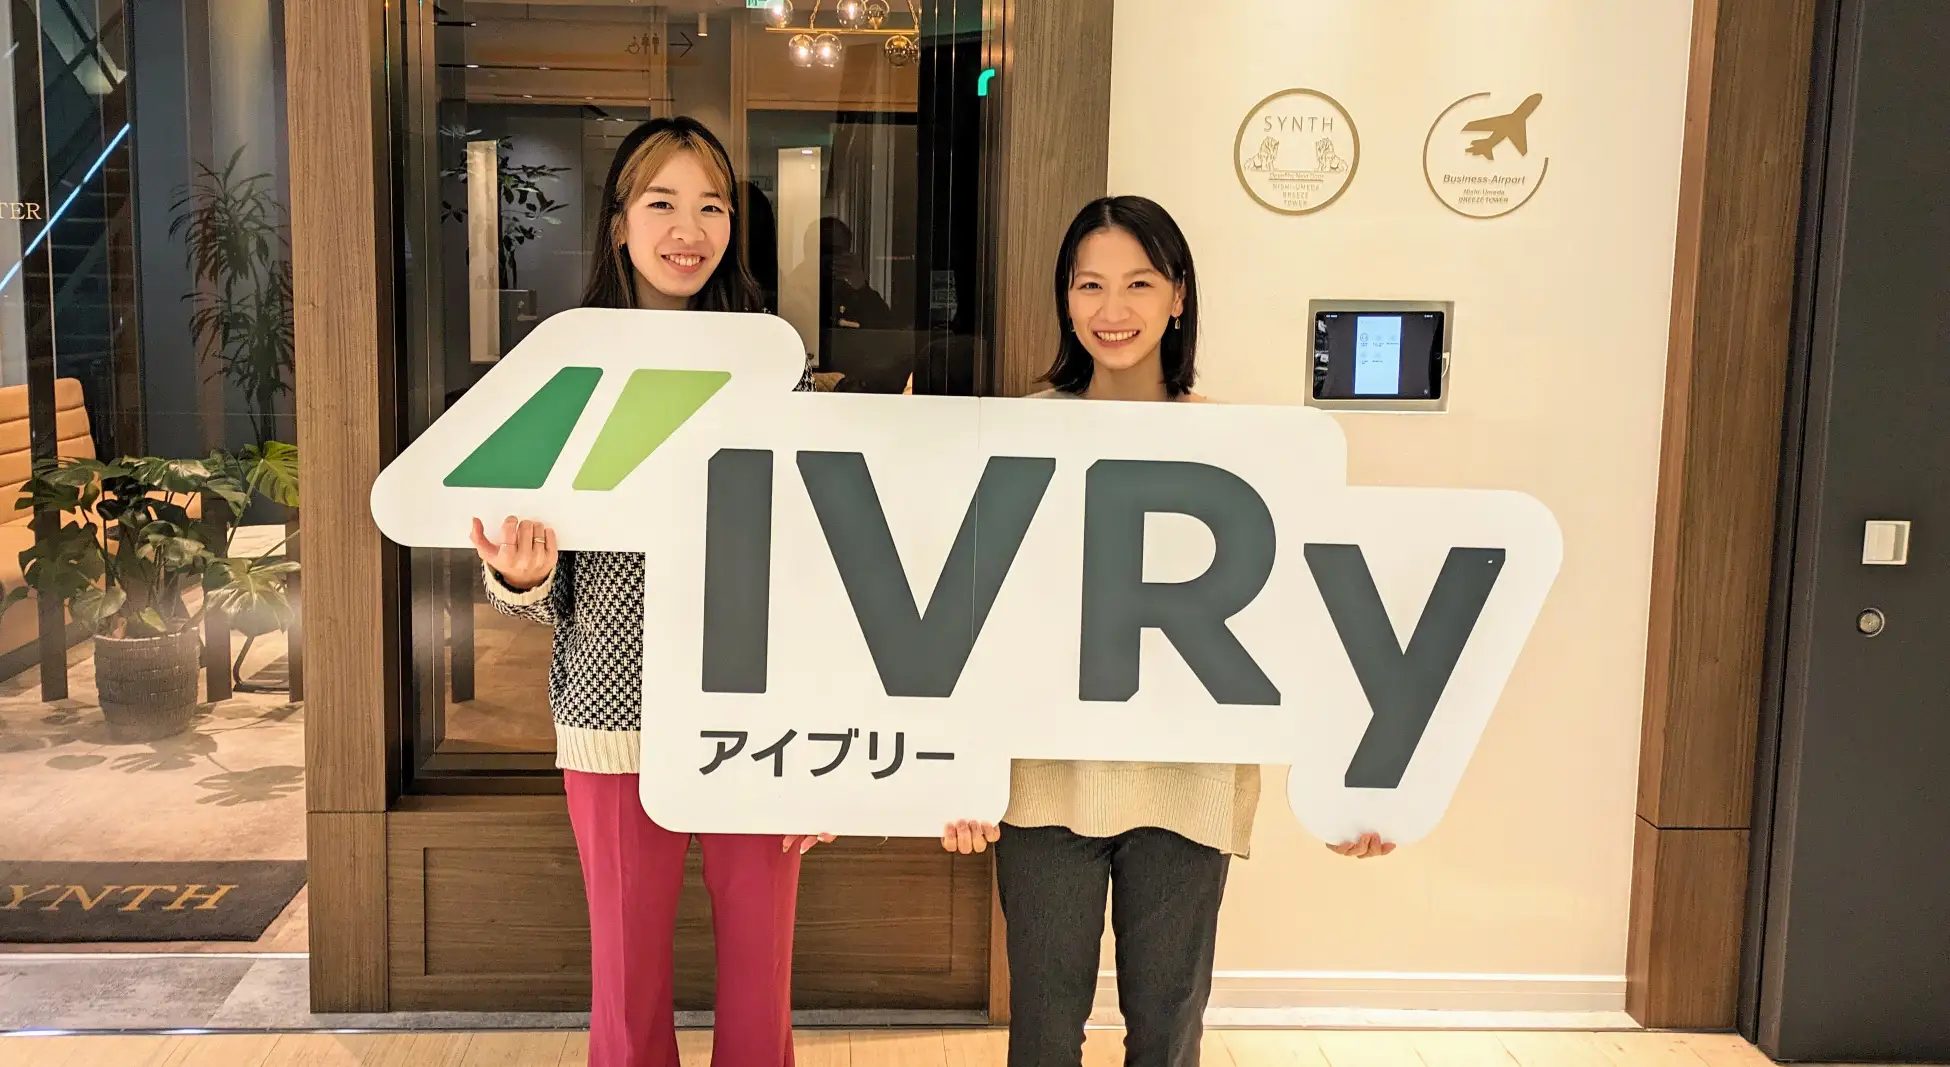 電話DX SaaSのIVRy（アイブリー）、大阪に新オフィスを開設。西日本エリアにおける採用活動とサービス提供を強化